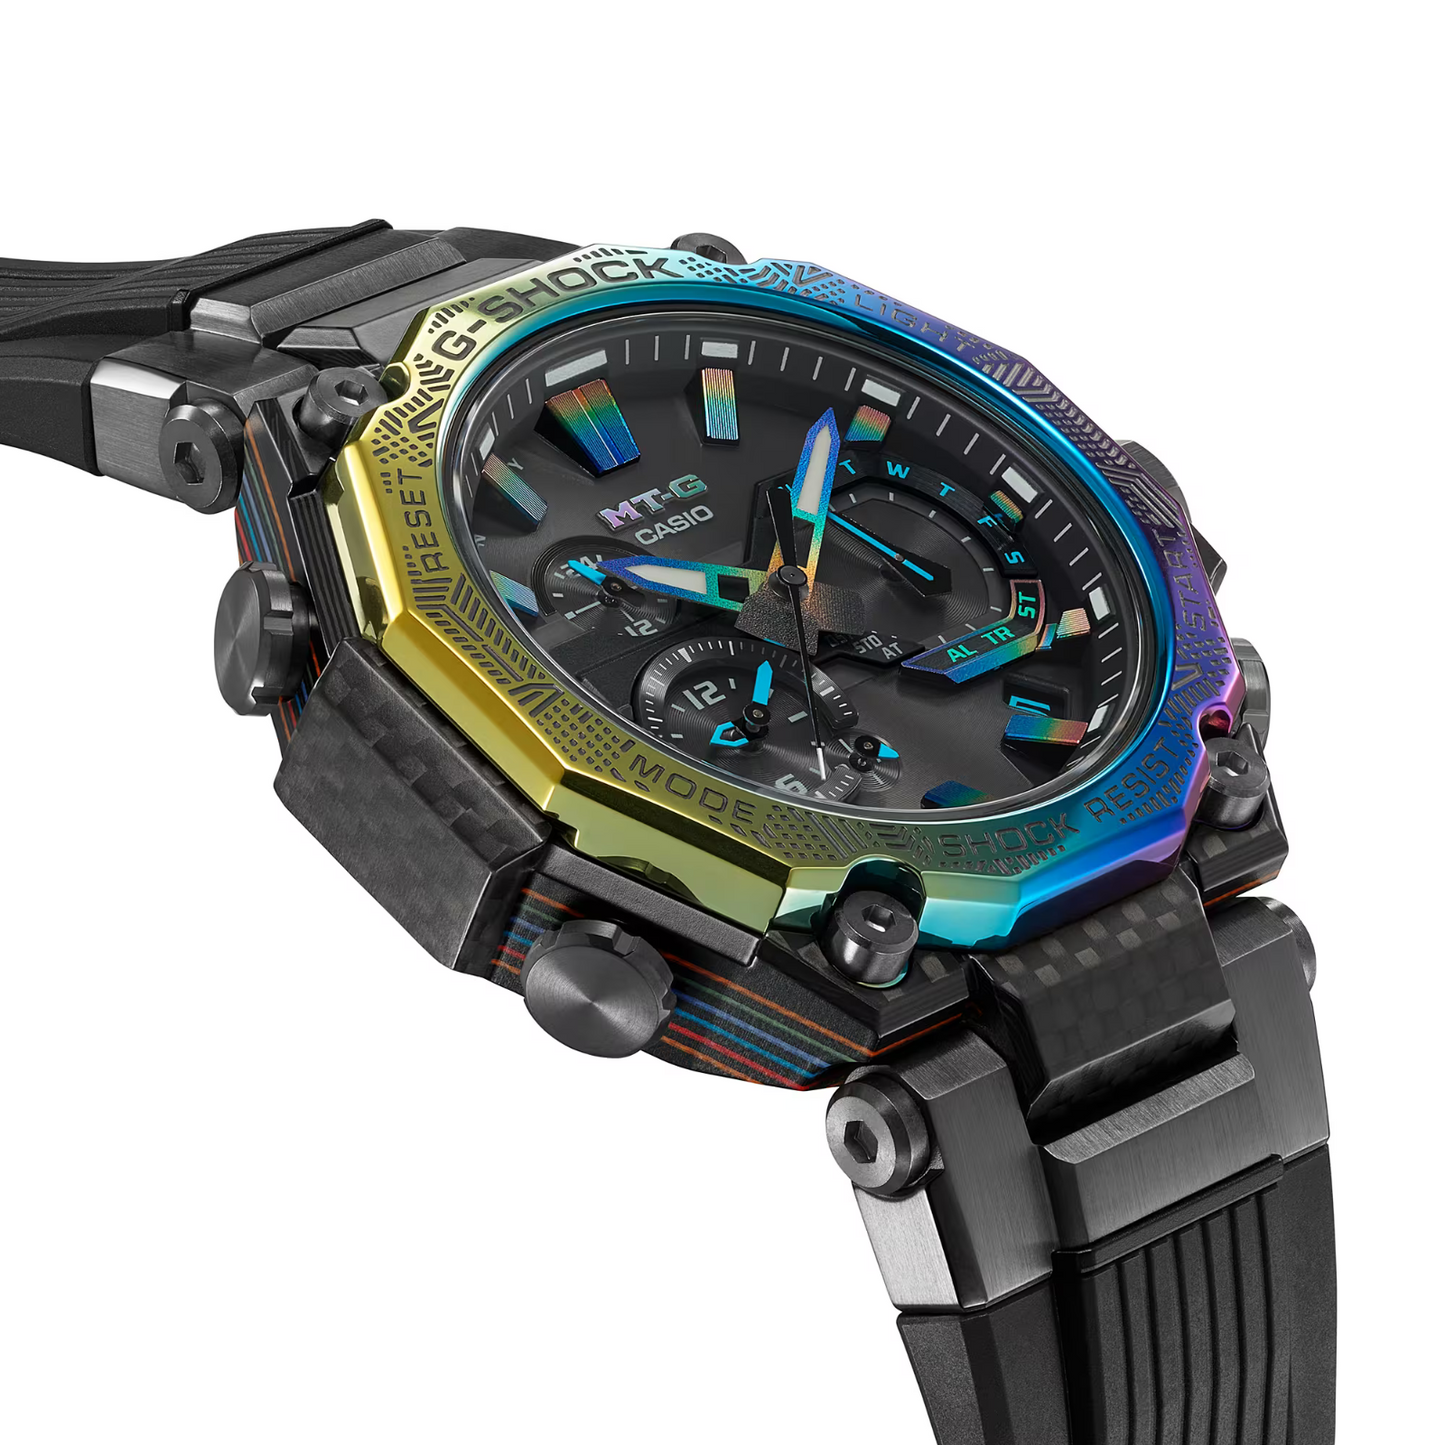 Casio G-Shock MT-G City Illumination Limited Edition Solar Watch MTG-B2000YR-1